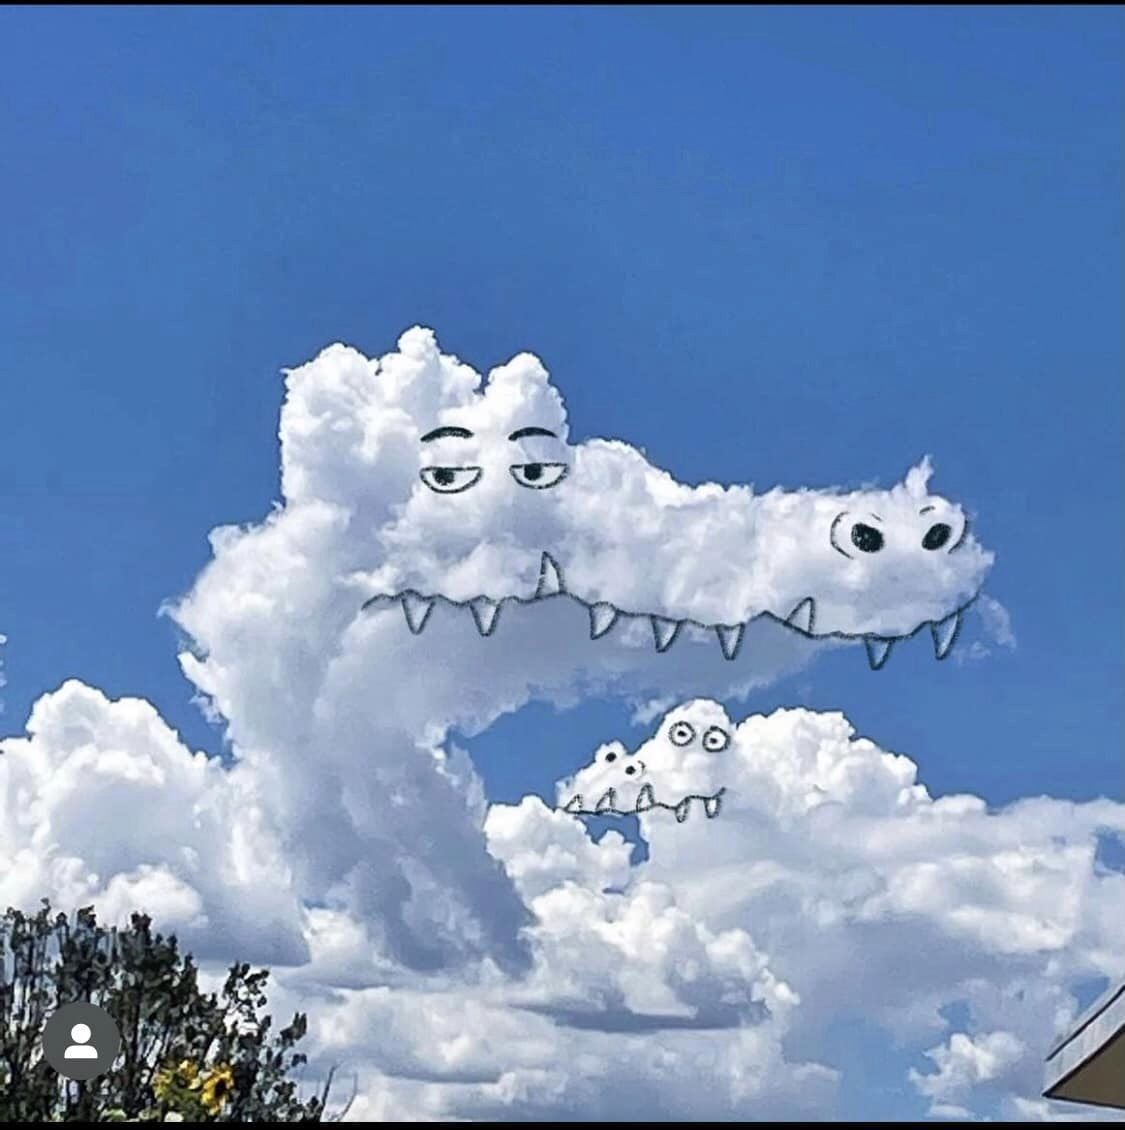 ☁️ #clouds #cloud #art #cloudart #psychiclilly #cloudscape #cloudscapes #cloudshapes #skyphotography #skyphoto #skyscape #skyscapes #mondaymood #mondayvibes #mondaymorning #mondaymotivation #mondays #doodles #doodlesofinstagram #clouddoodle #doodleart #scribble #scribbleart